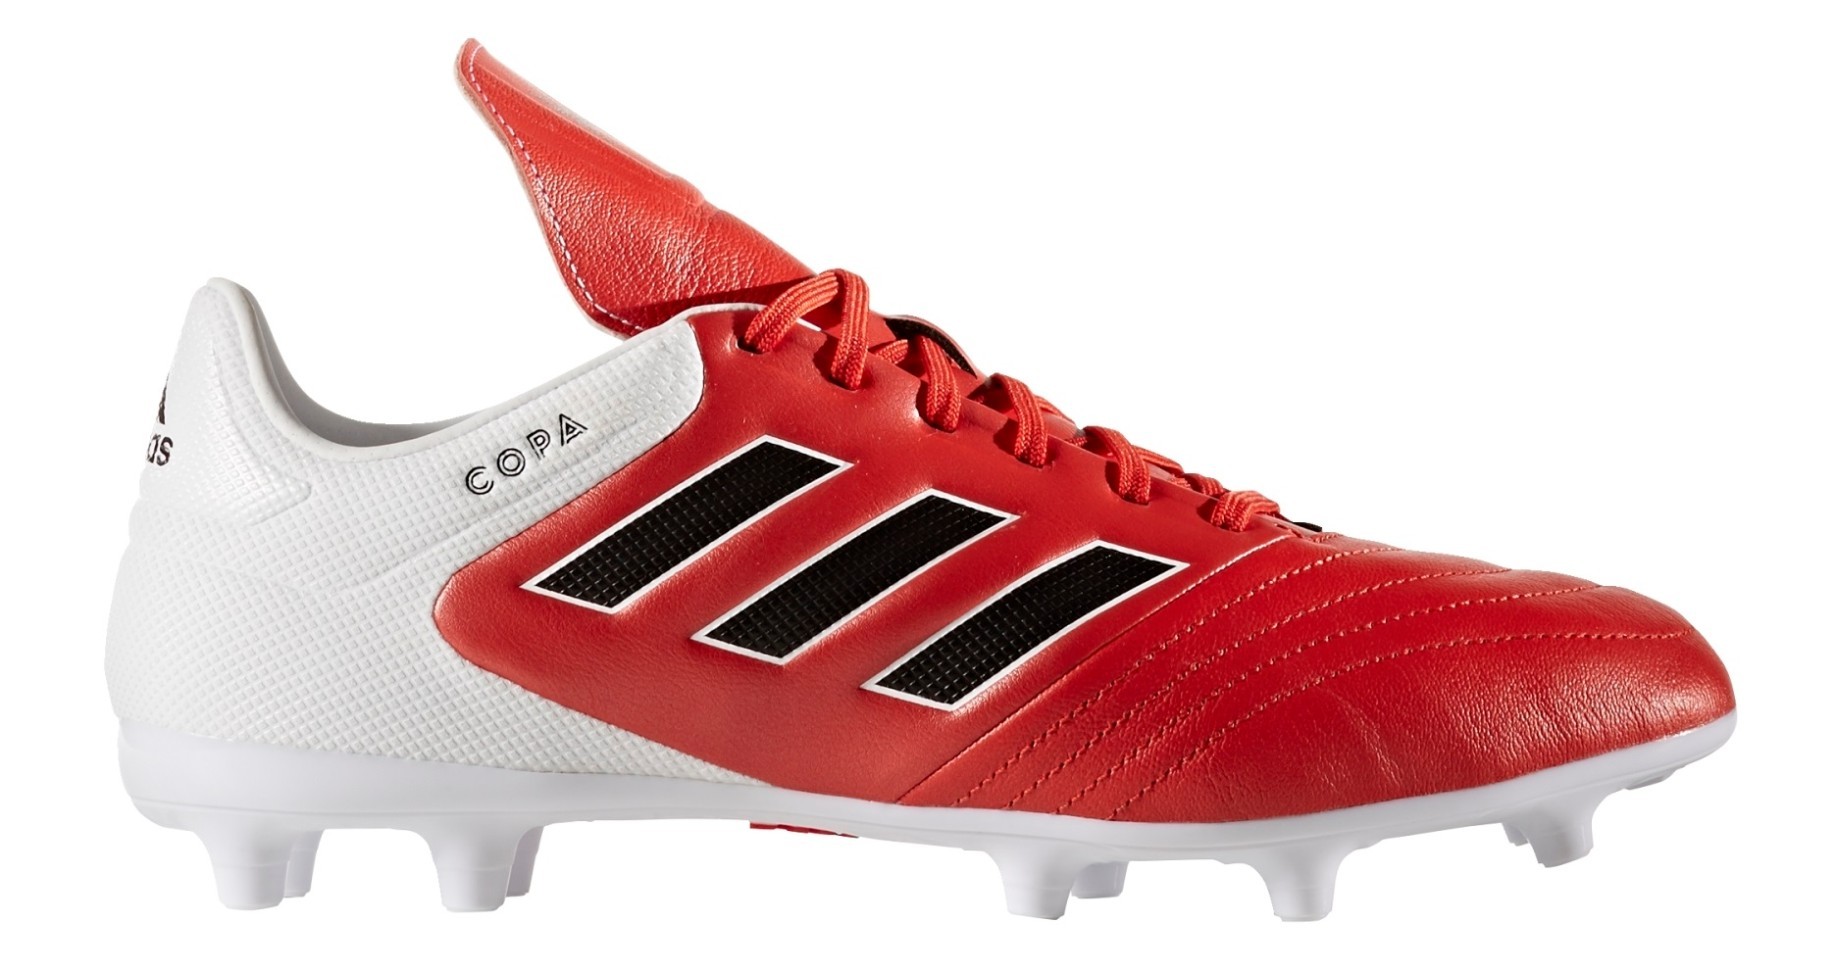 Scarpe Calcio Adidas Copa 17.3 FG Red Limit Pack colore Rosso Bianco -  Adidas - SportIT.com